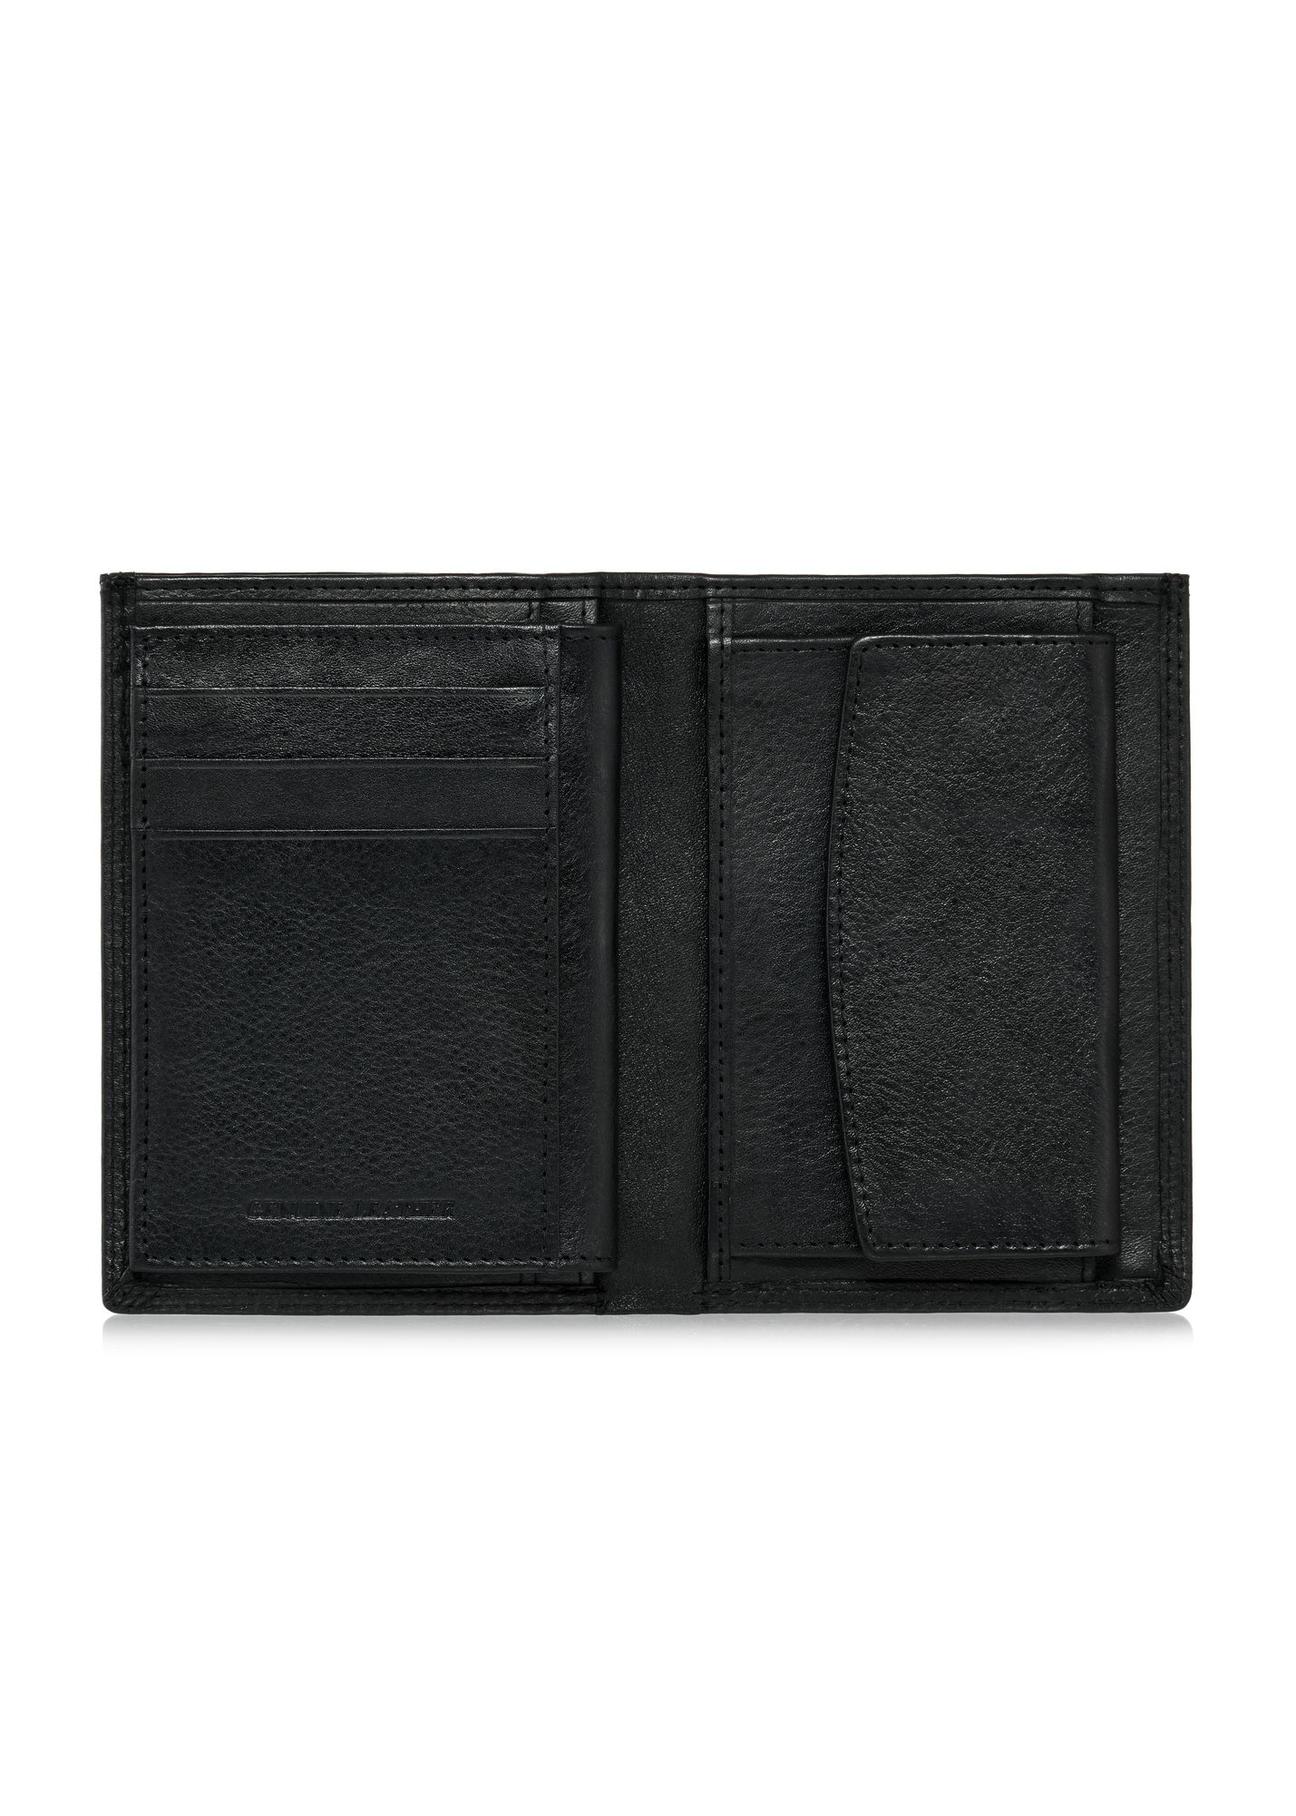 Czarny skórzany niezapinany portfel męski PORMS-0550-99(W24)